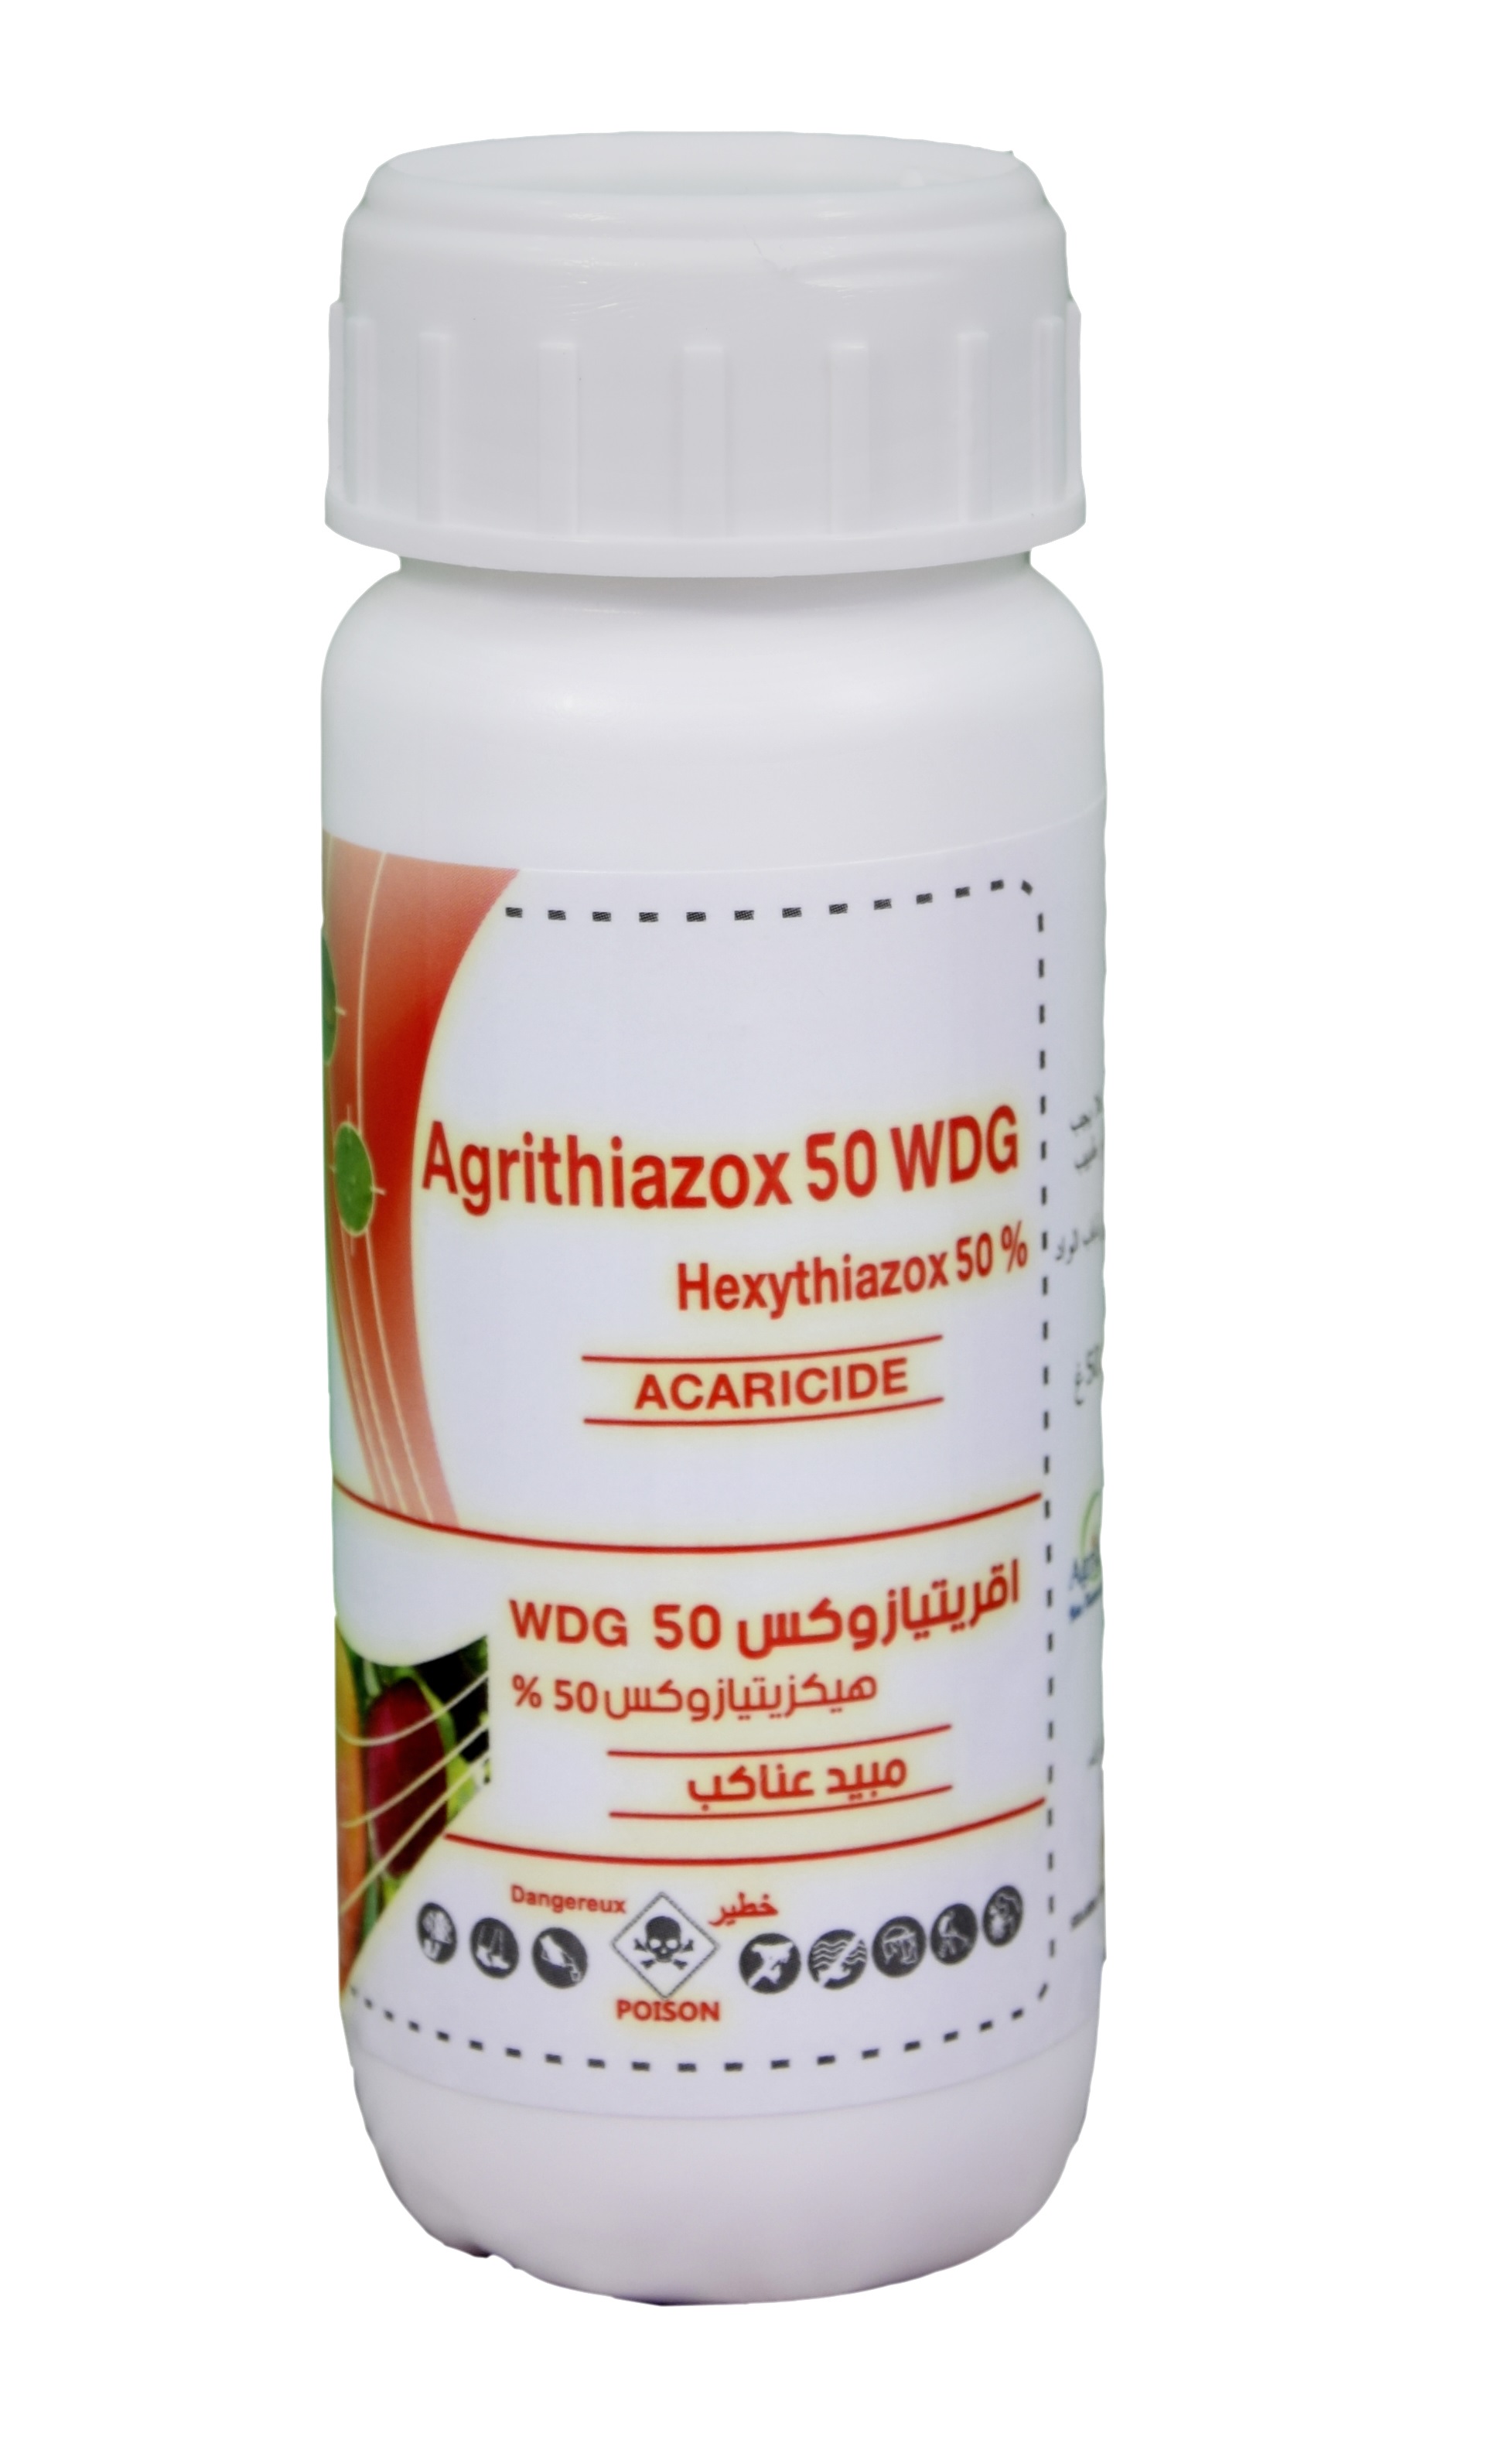 Agrithiazox 50 WDG